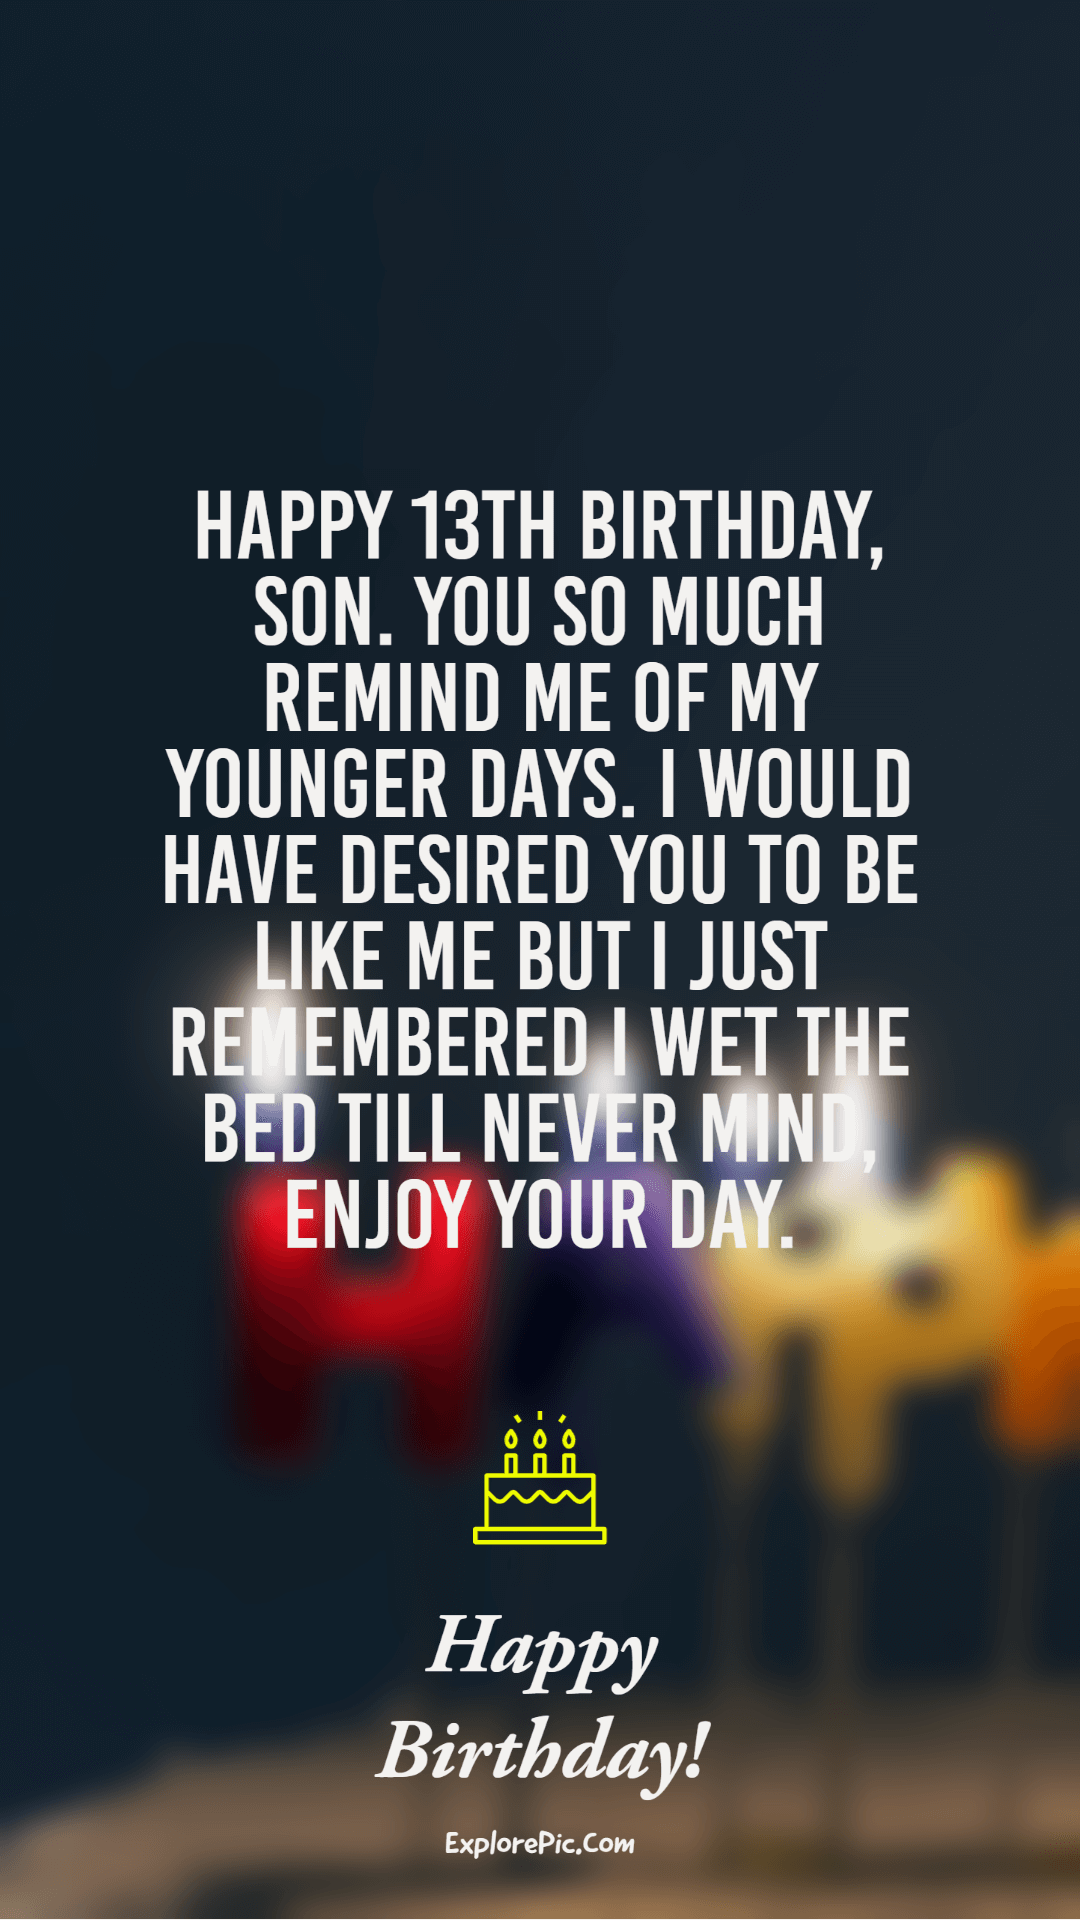 best ways to wish someone a happy 13th birthday